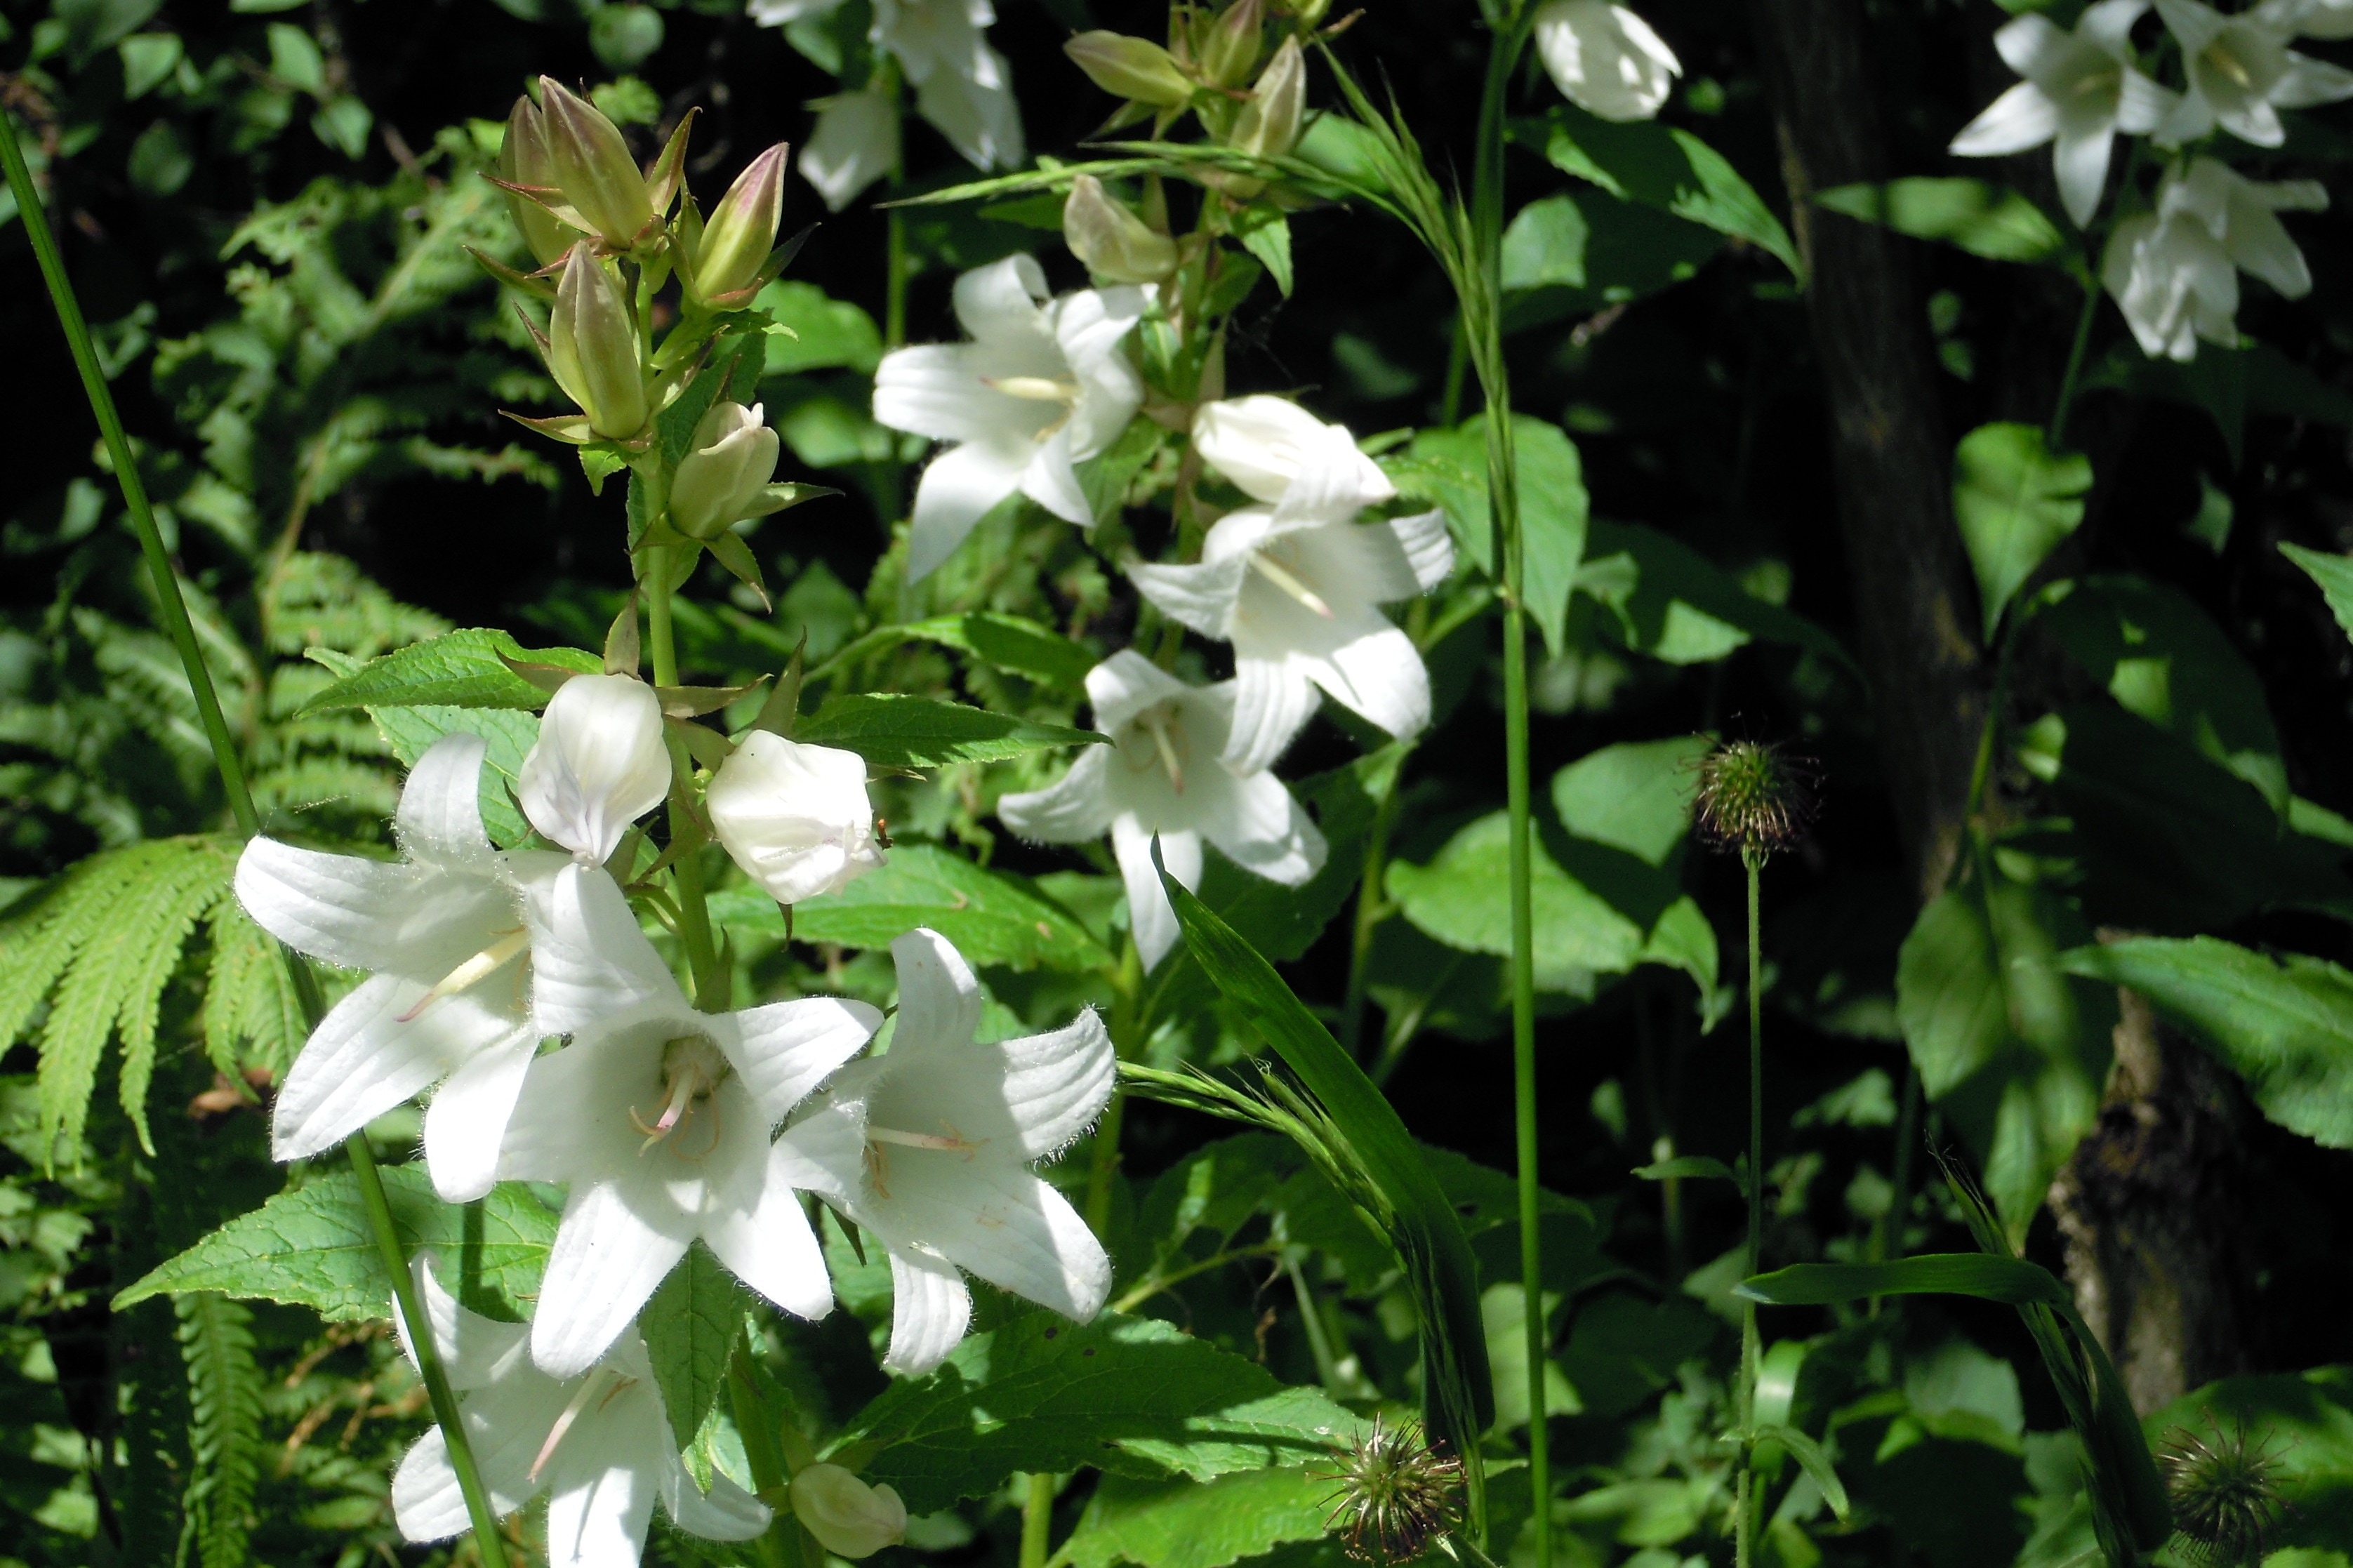 white 5 petaled flower s